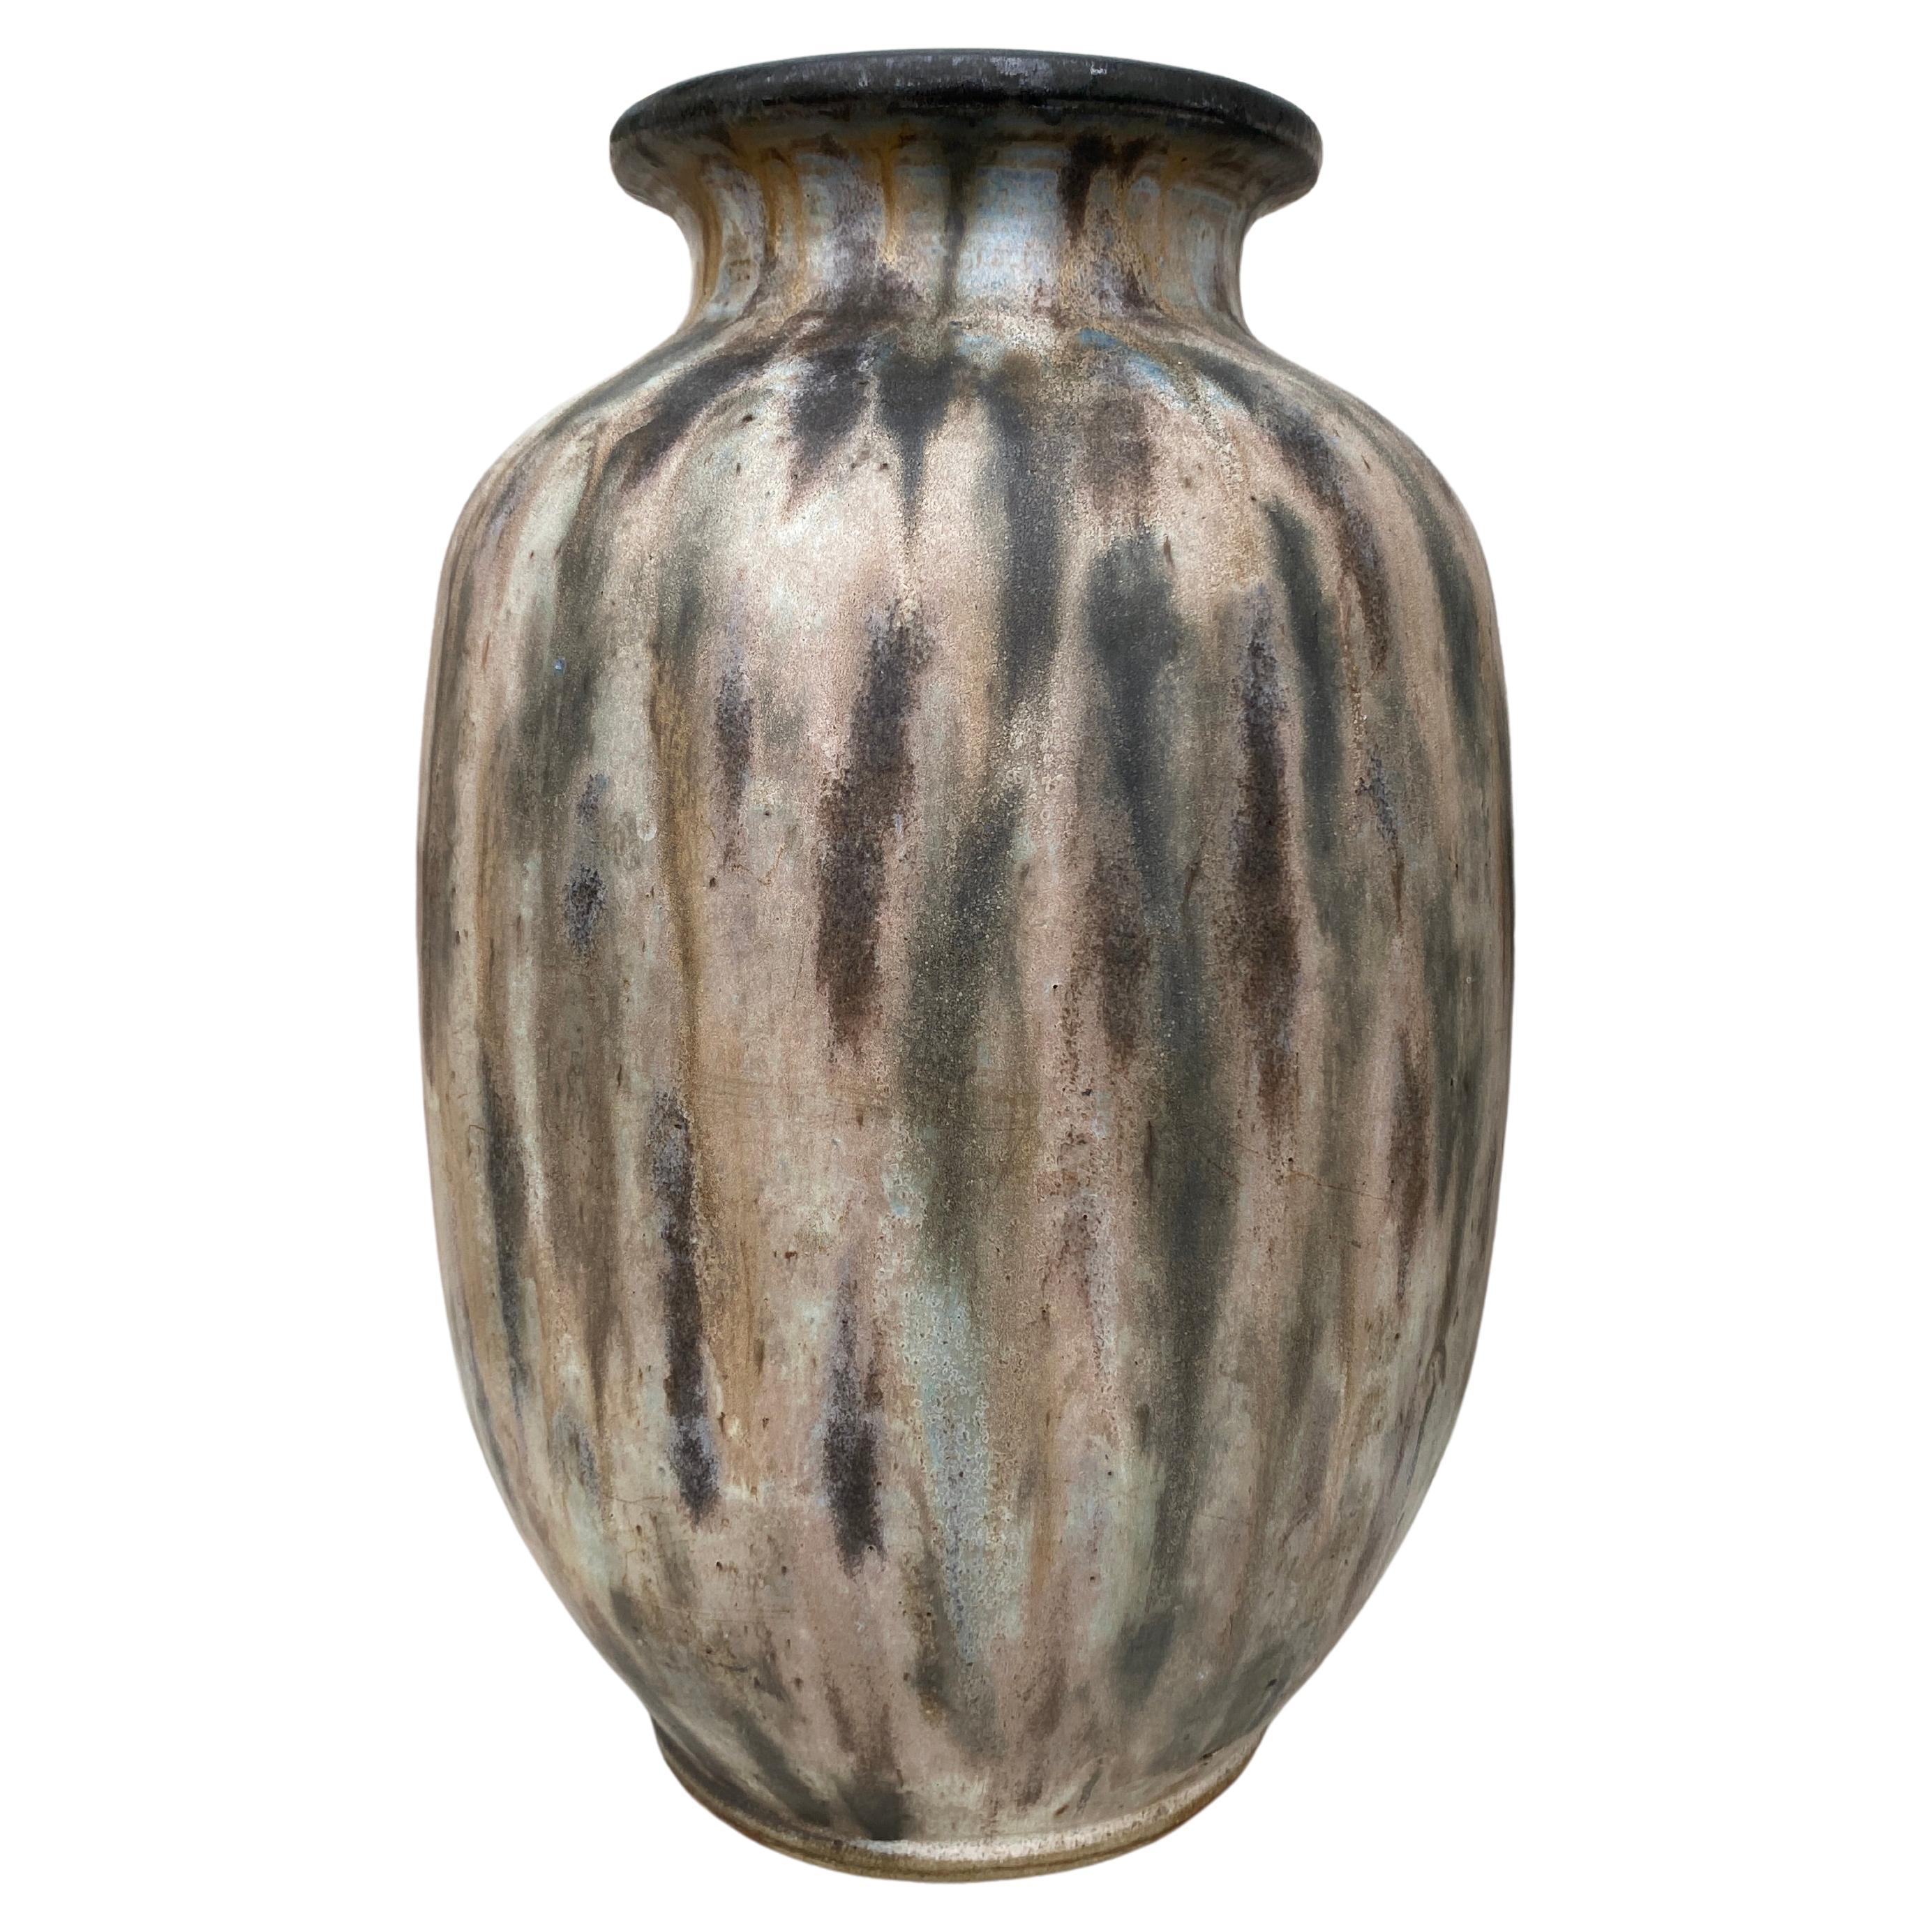 Très grand vase en poterie signé Antoine Dubois pour Bouffioulx circa 1930.
Hauteur / 15,5 pouces.